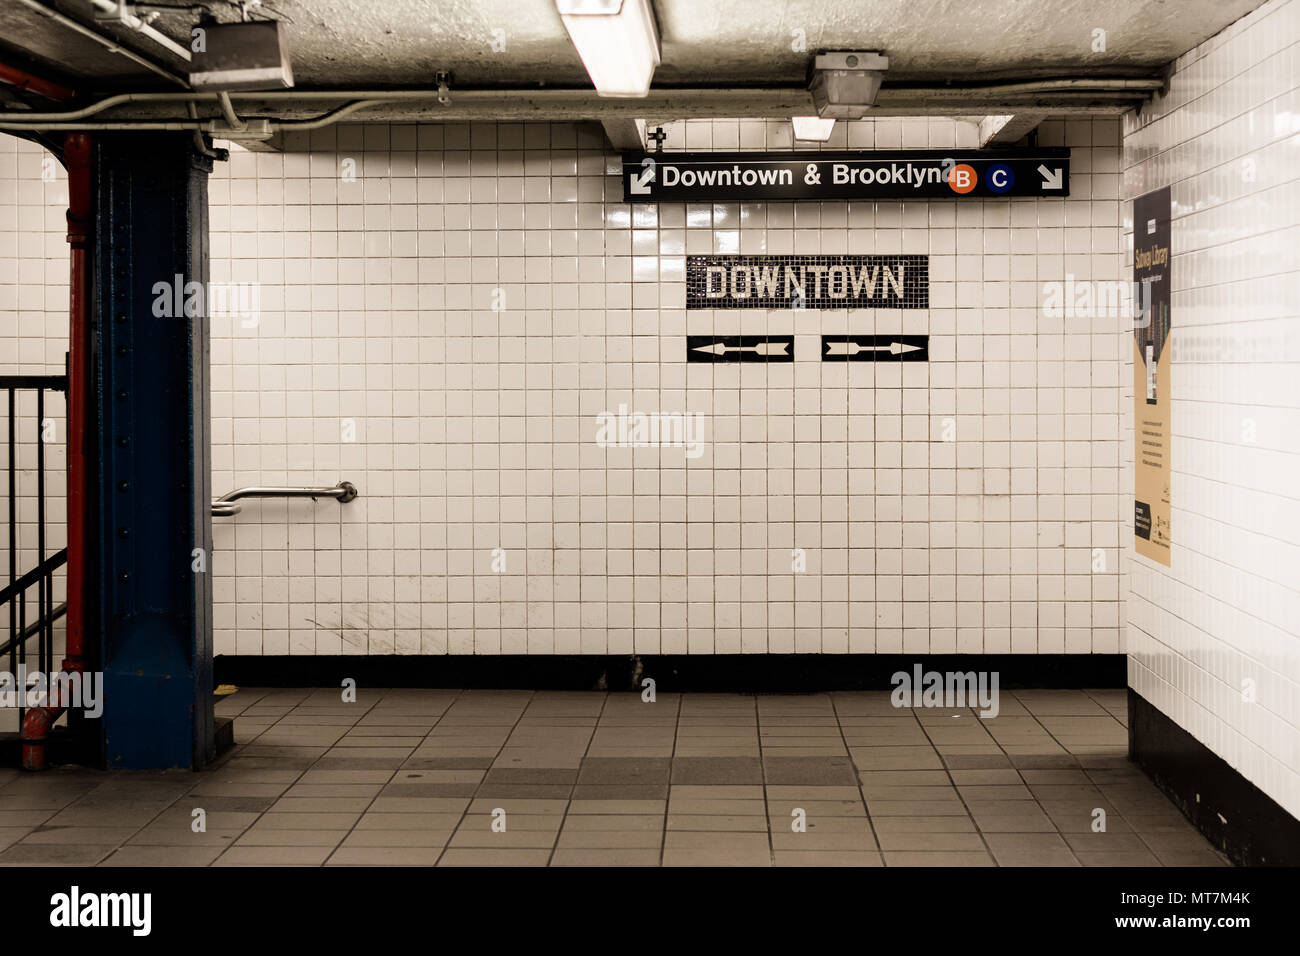 Downtown & Brooklyn sign in una stazione della metropolitana a Manhattan, New York City Foto Stock